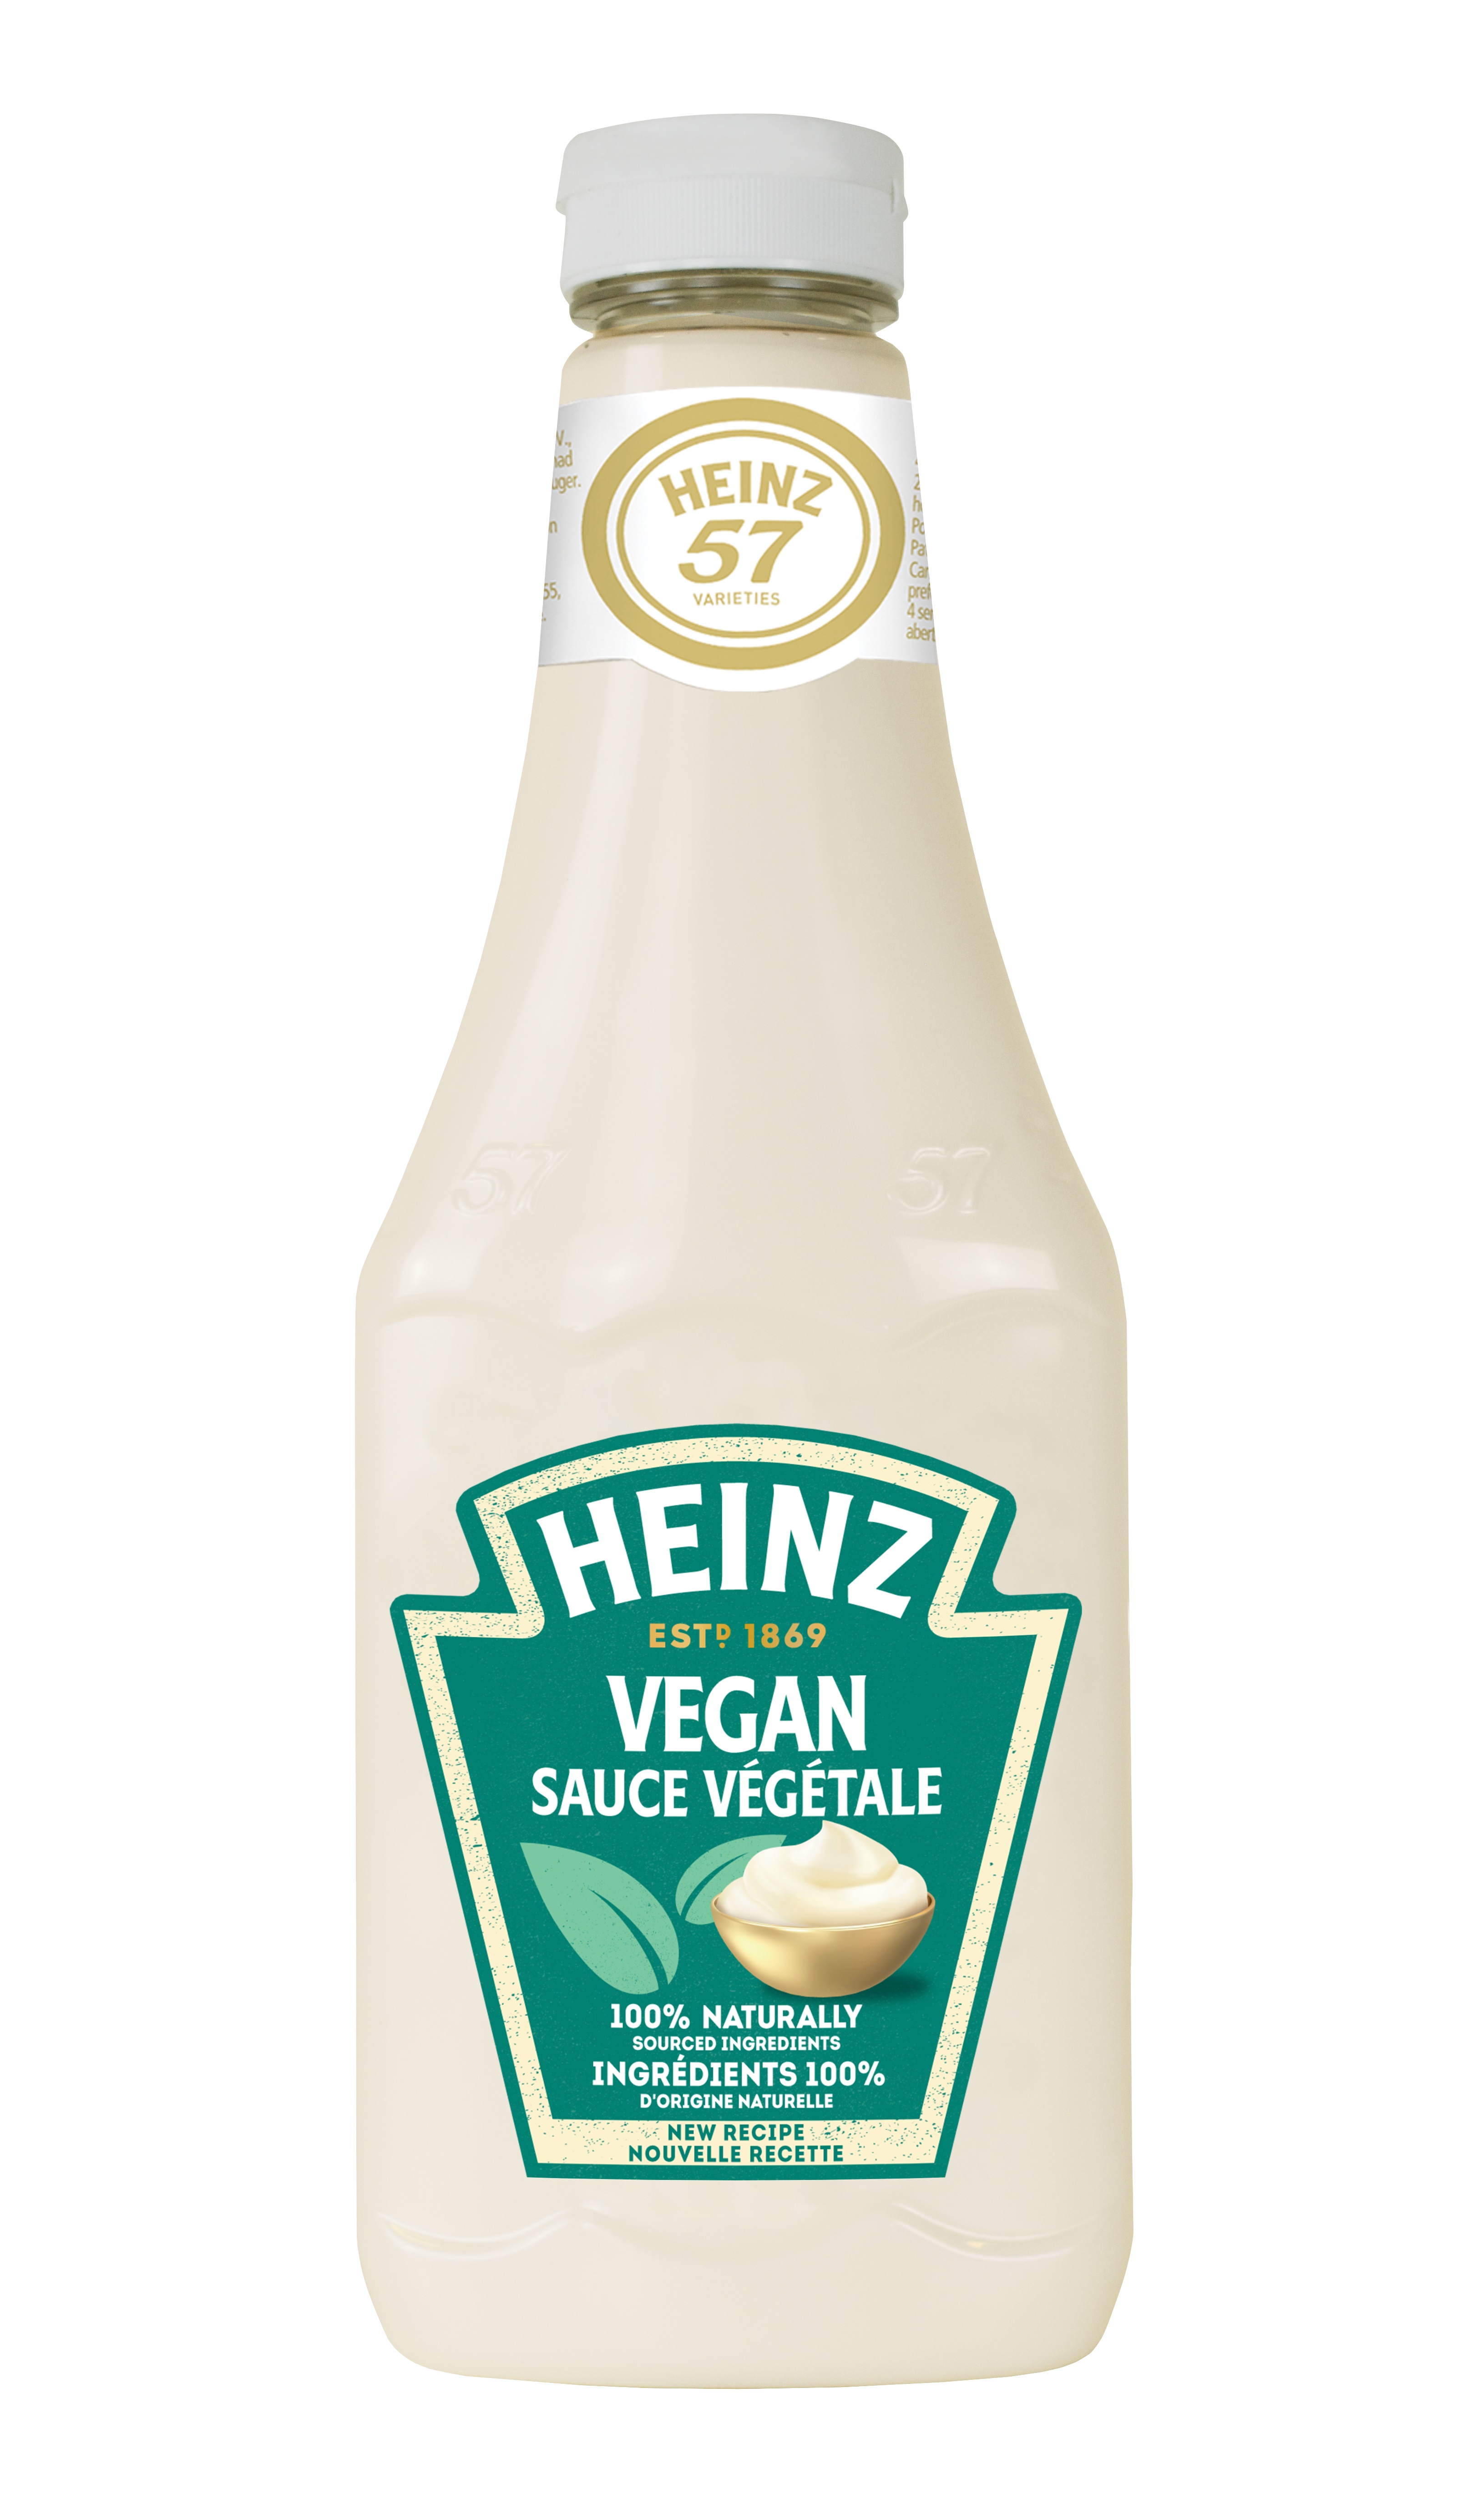 76018546 - Heinz_Vegan_sauce vegetale_875ml